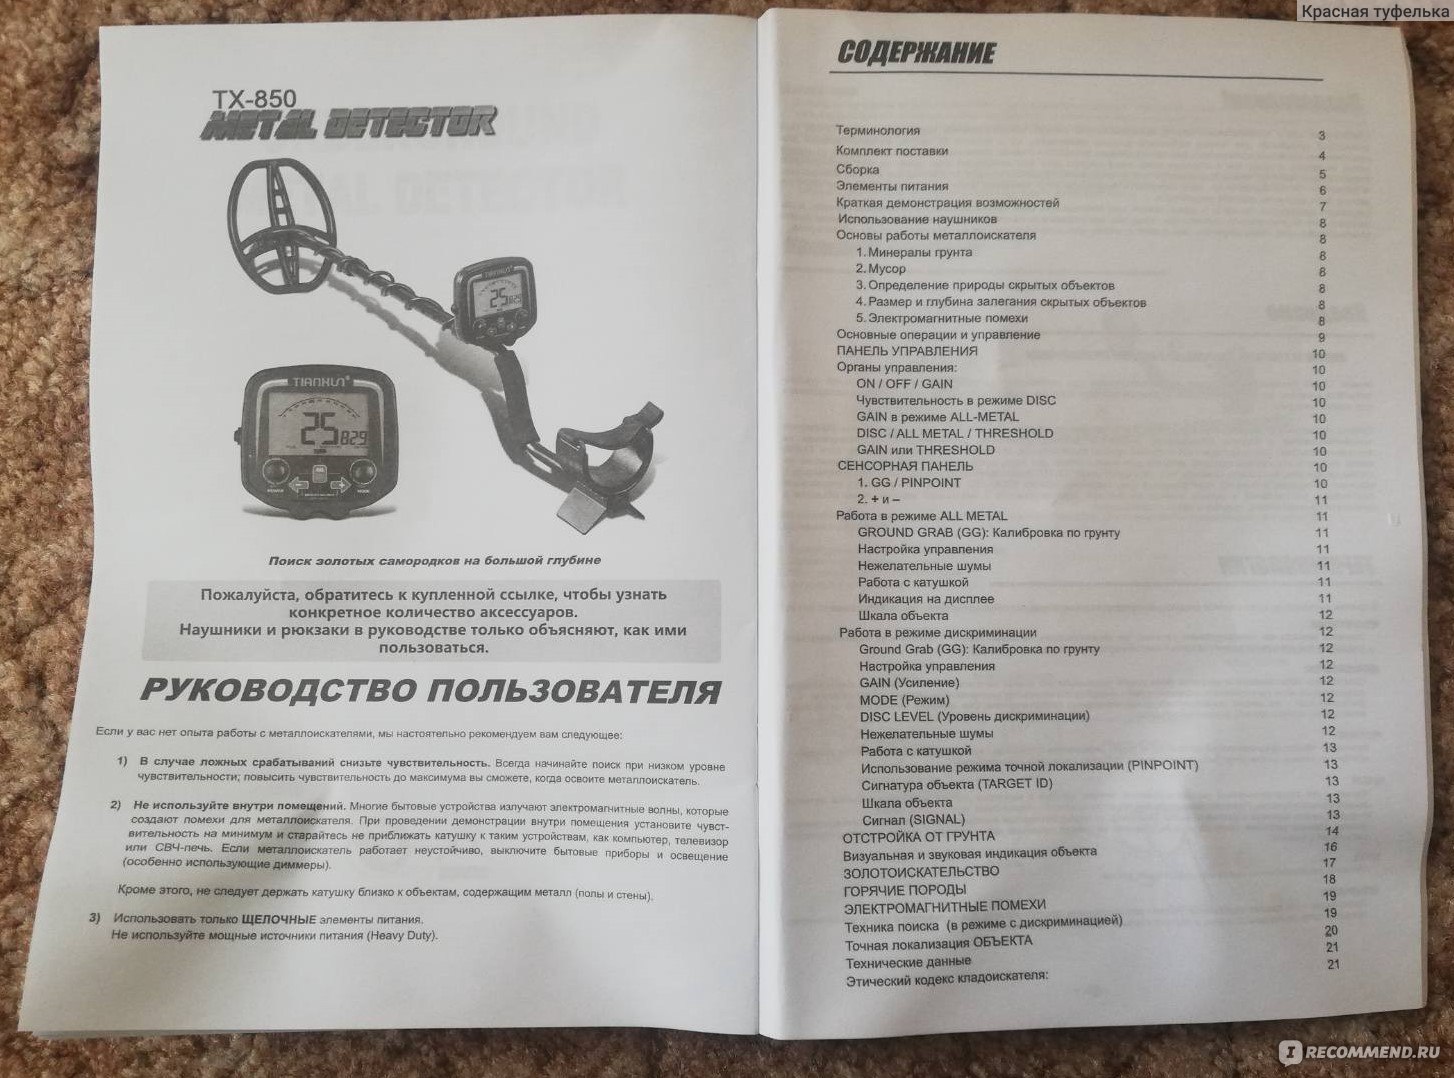 Металлоискатель тх850 отзывы. Инструкция металлоискателя ТХ 850 на русском языке. Доработка металлоискателя ТХ 850. Металлоискатель ТХ-850 инструкция по применению на русском языке.